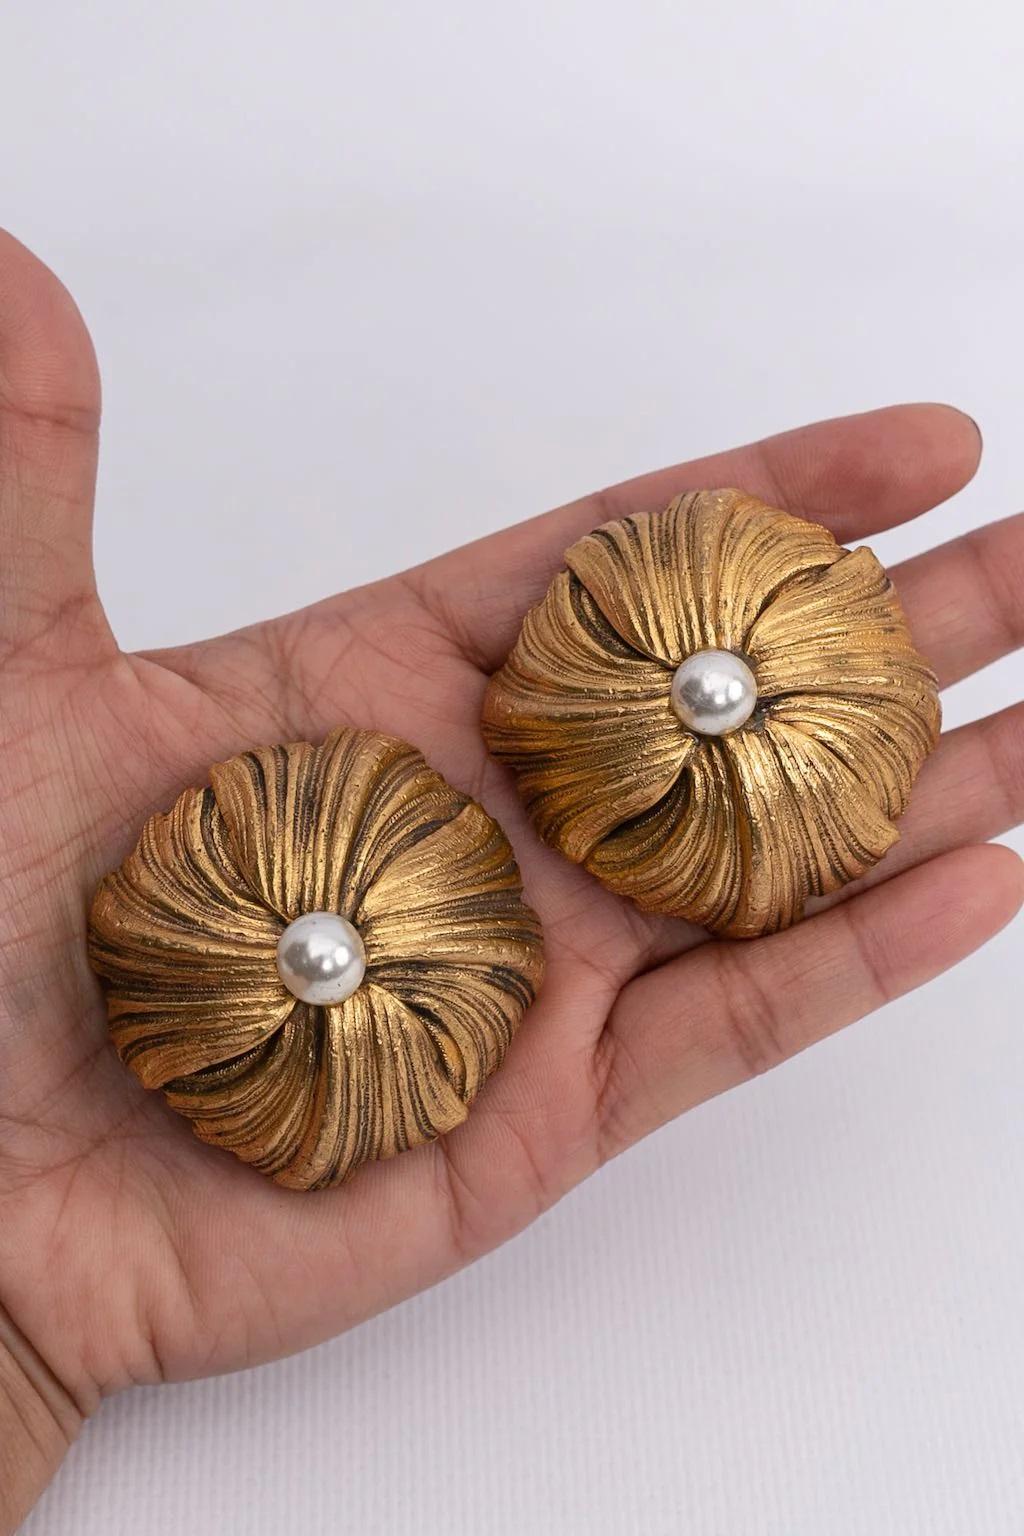 Givenchy - Boucles d'oreilles clips en métal doré centrées sur une fausse perle. Le dos est pourvu de deux clips.

Informations complémentaires :
Dimensions : Ø 6 cm (Ø 2.36